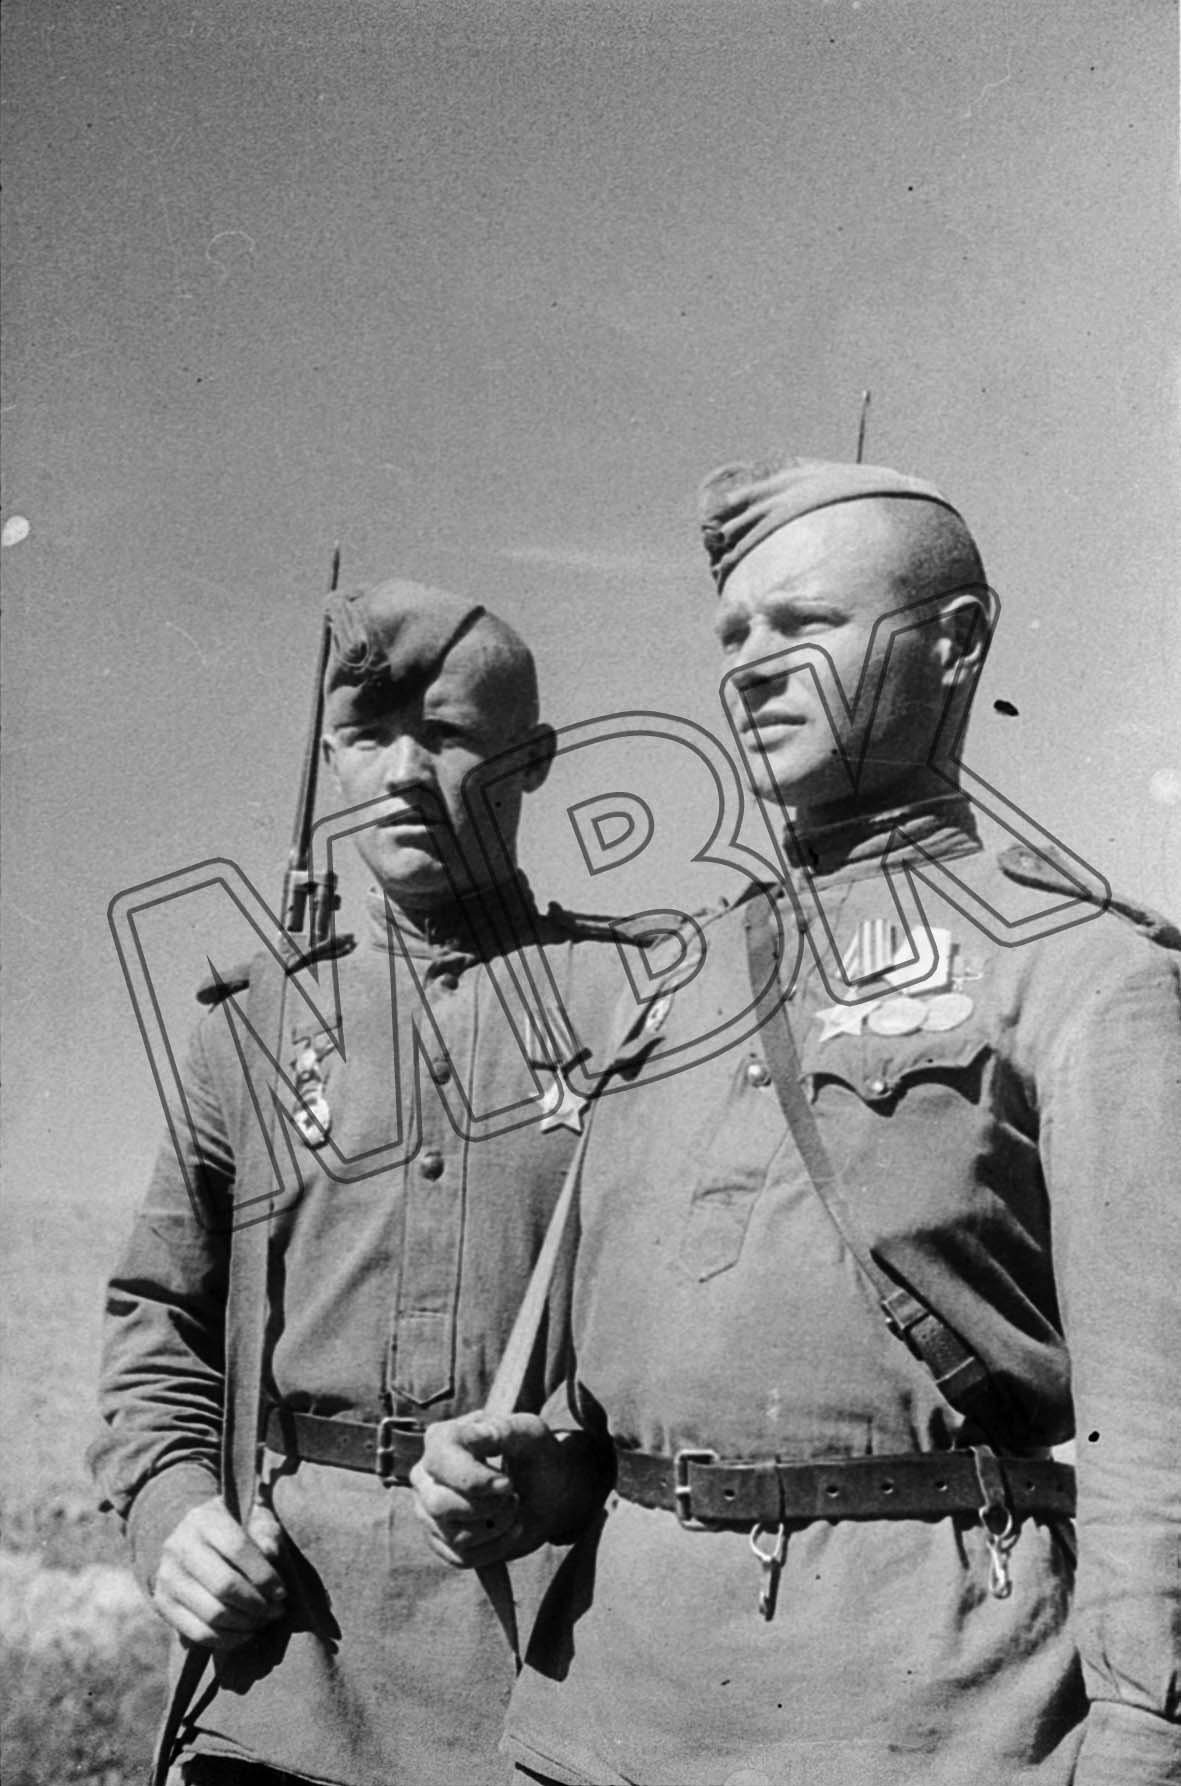 Fotografie: Die Gardesergeanten Iwan Schulgin Iwan Schulgin und Nikolaj Below mit Auszeichnungen, August 1944 (Museum Berlin-Karlshorst RR-P)